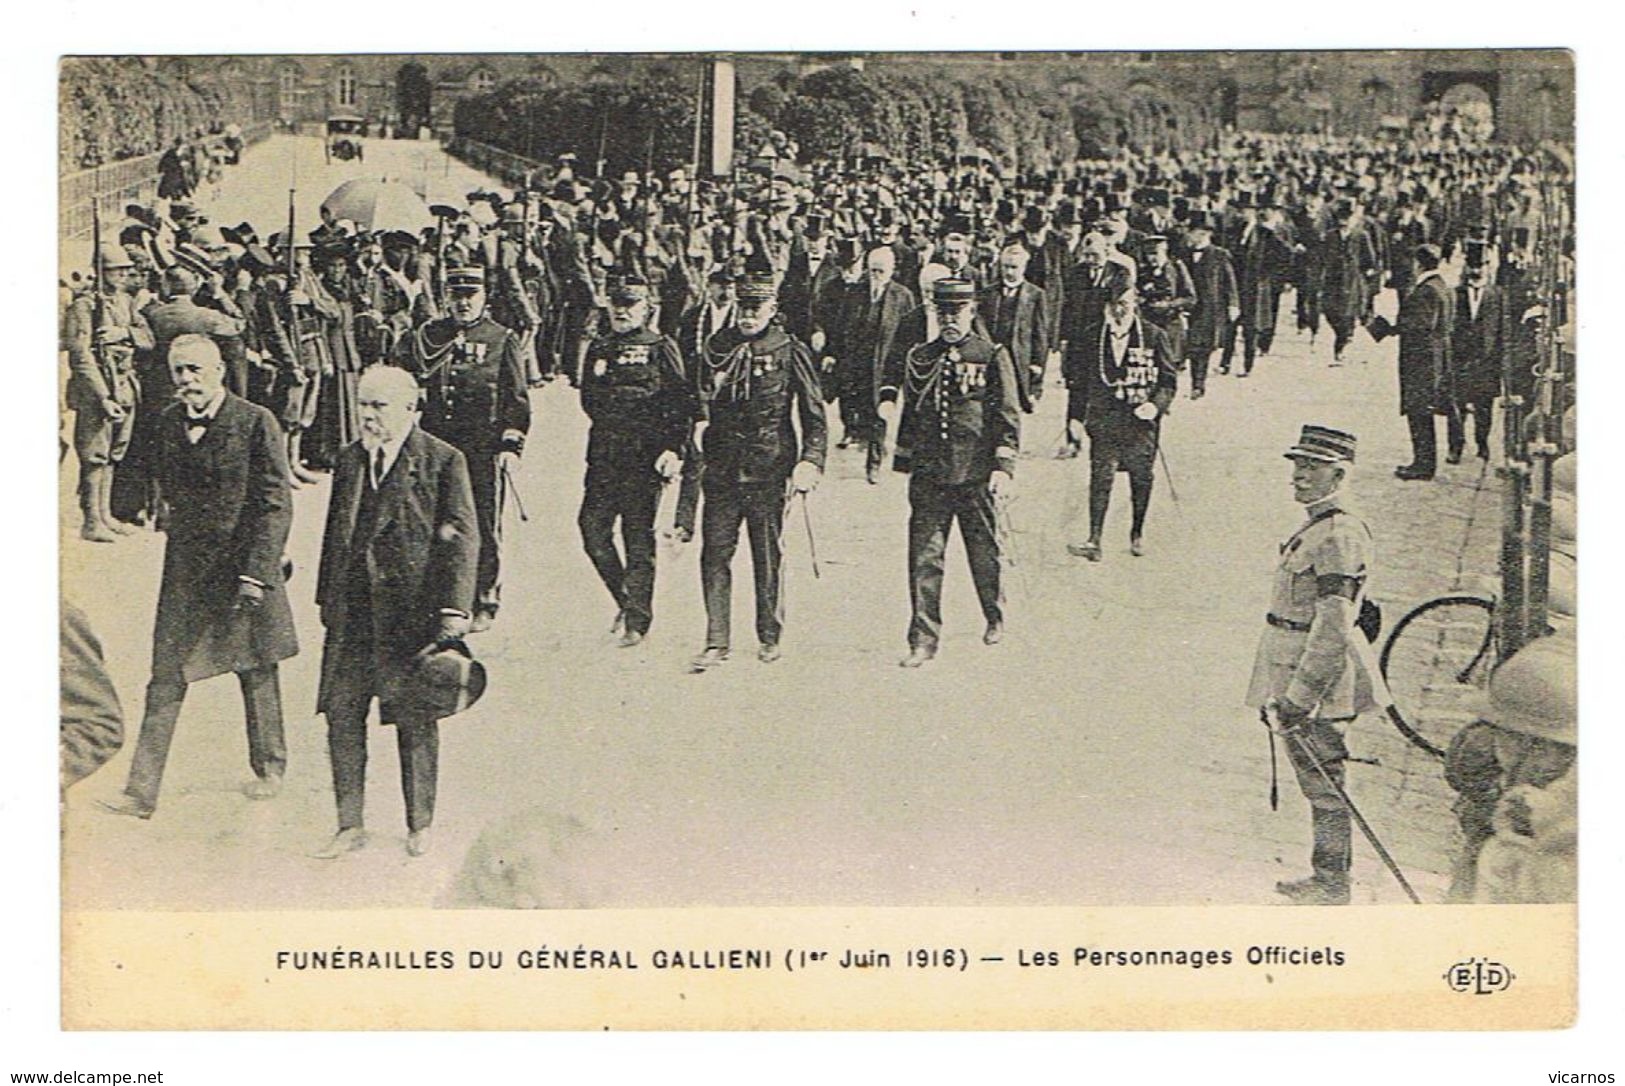 CPA Funerailles du général Gallieni 1er juin 1916 Lot de 11 cartes